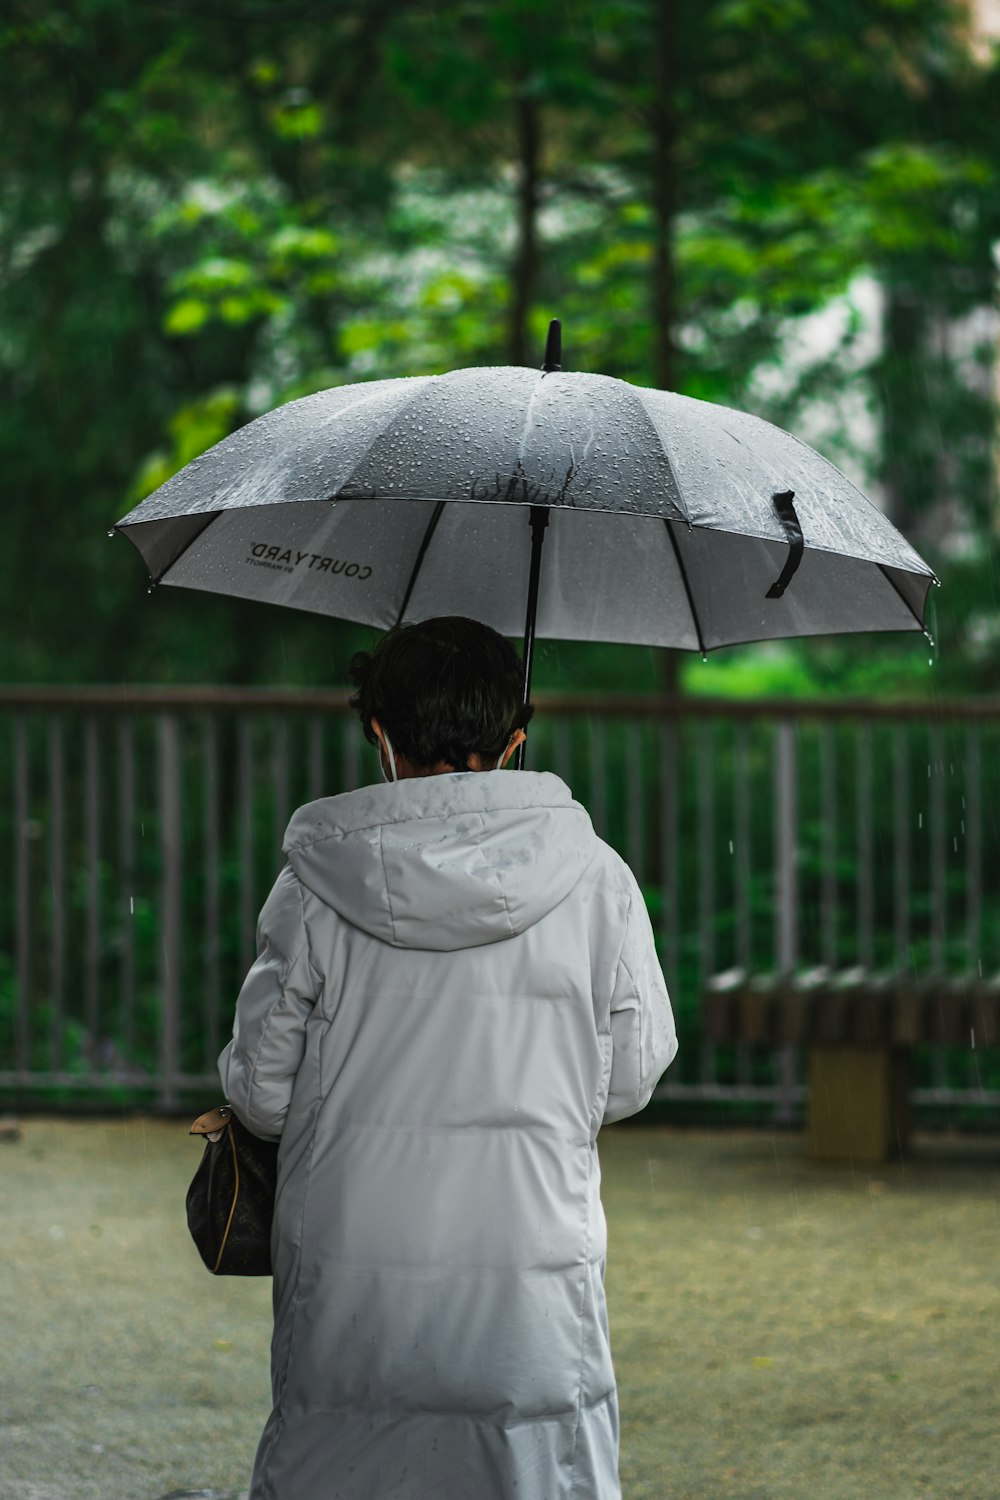 Foto mulher no casaco branco que segura o guarda-chuva – Imagem de Oxford  grátis no Unsplash